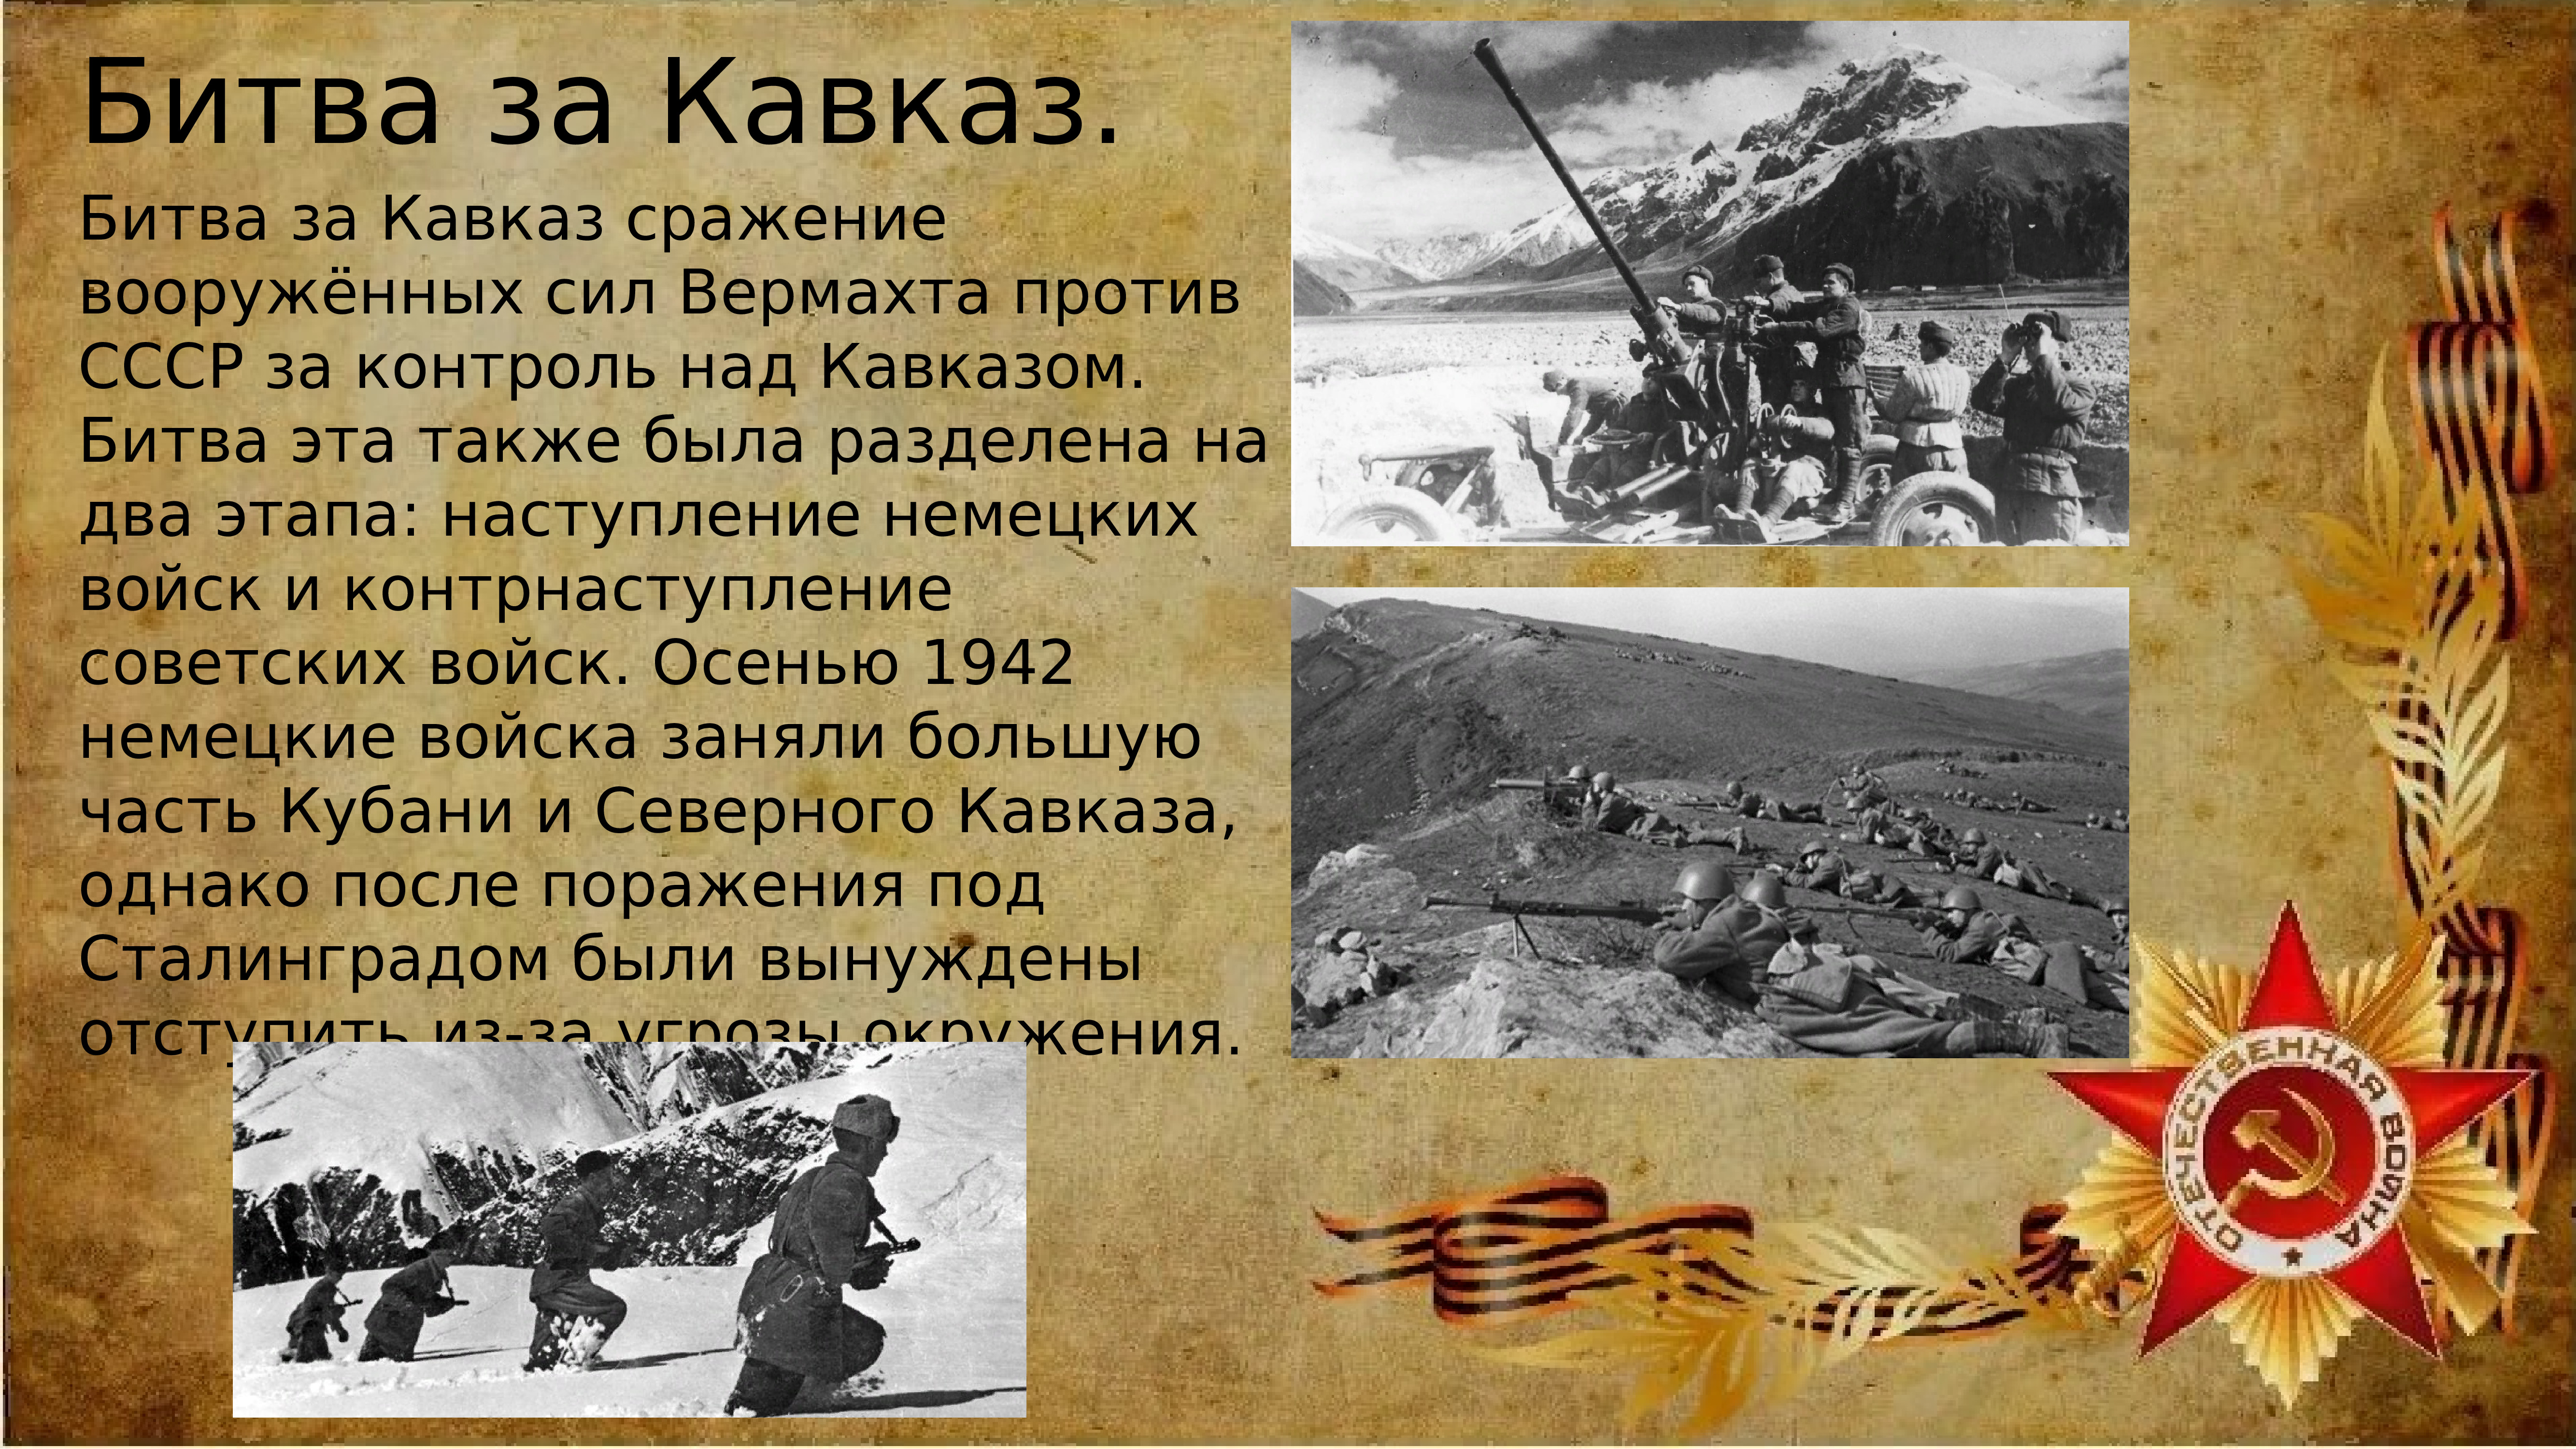 Начало битвы за Кавказ 25 июля 1942